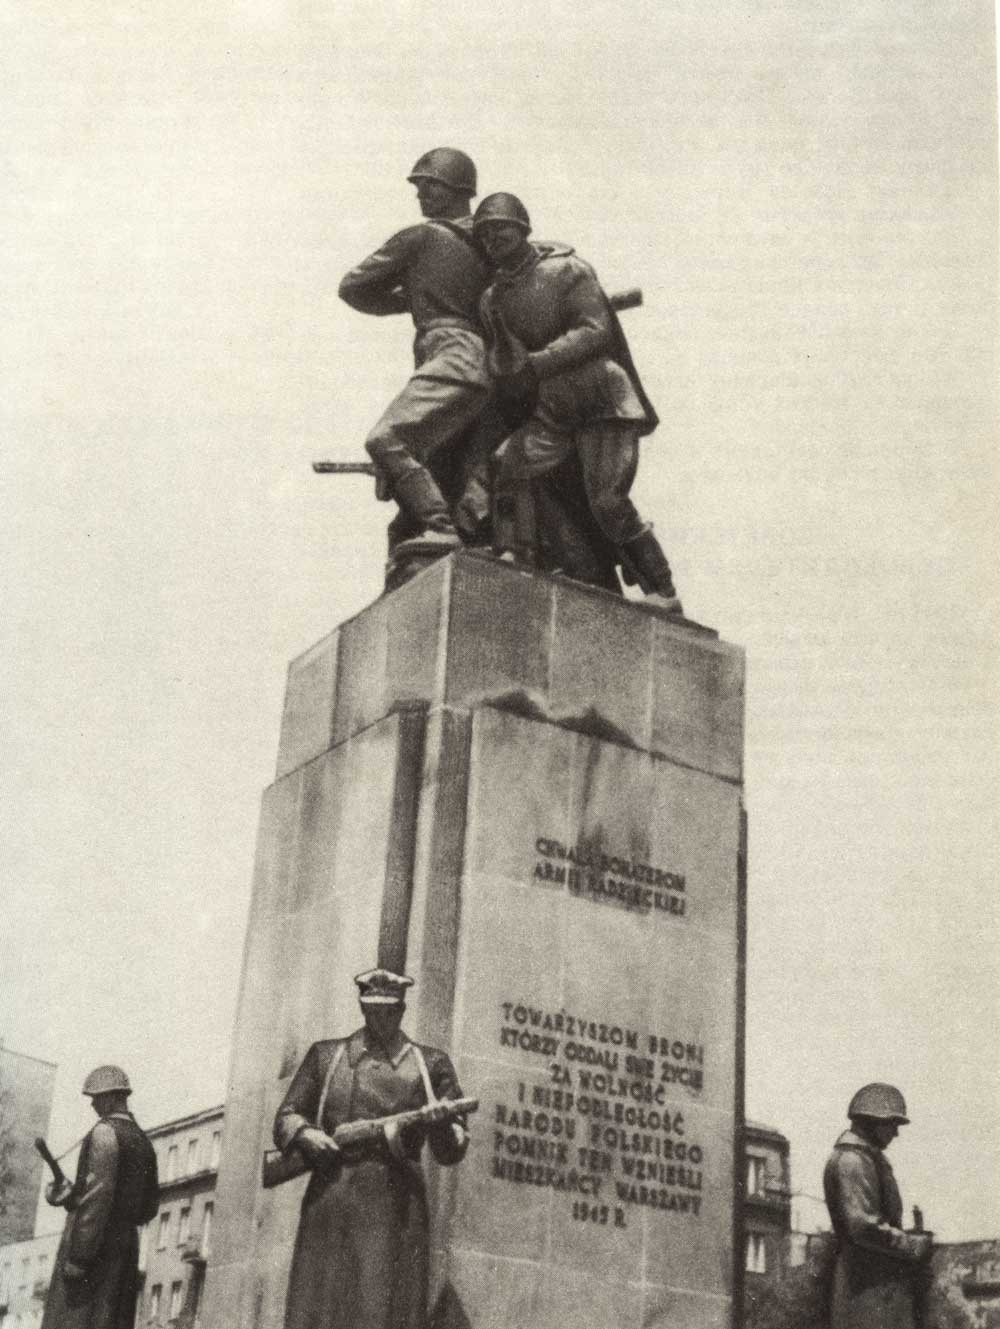 18 ноября 1945 года в память о победе советских воинов в Варшаве был возведен гранитный монумент – памятник советско-польскому братству по оружию («Братерство брони»).